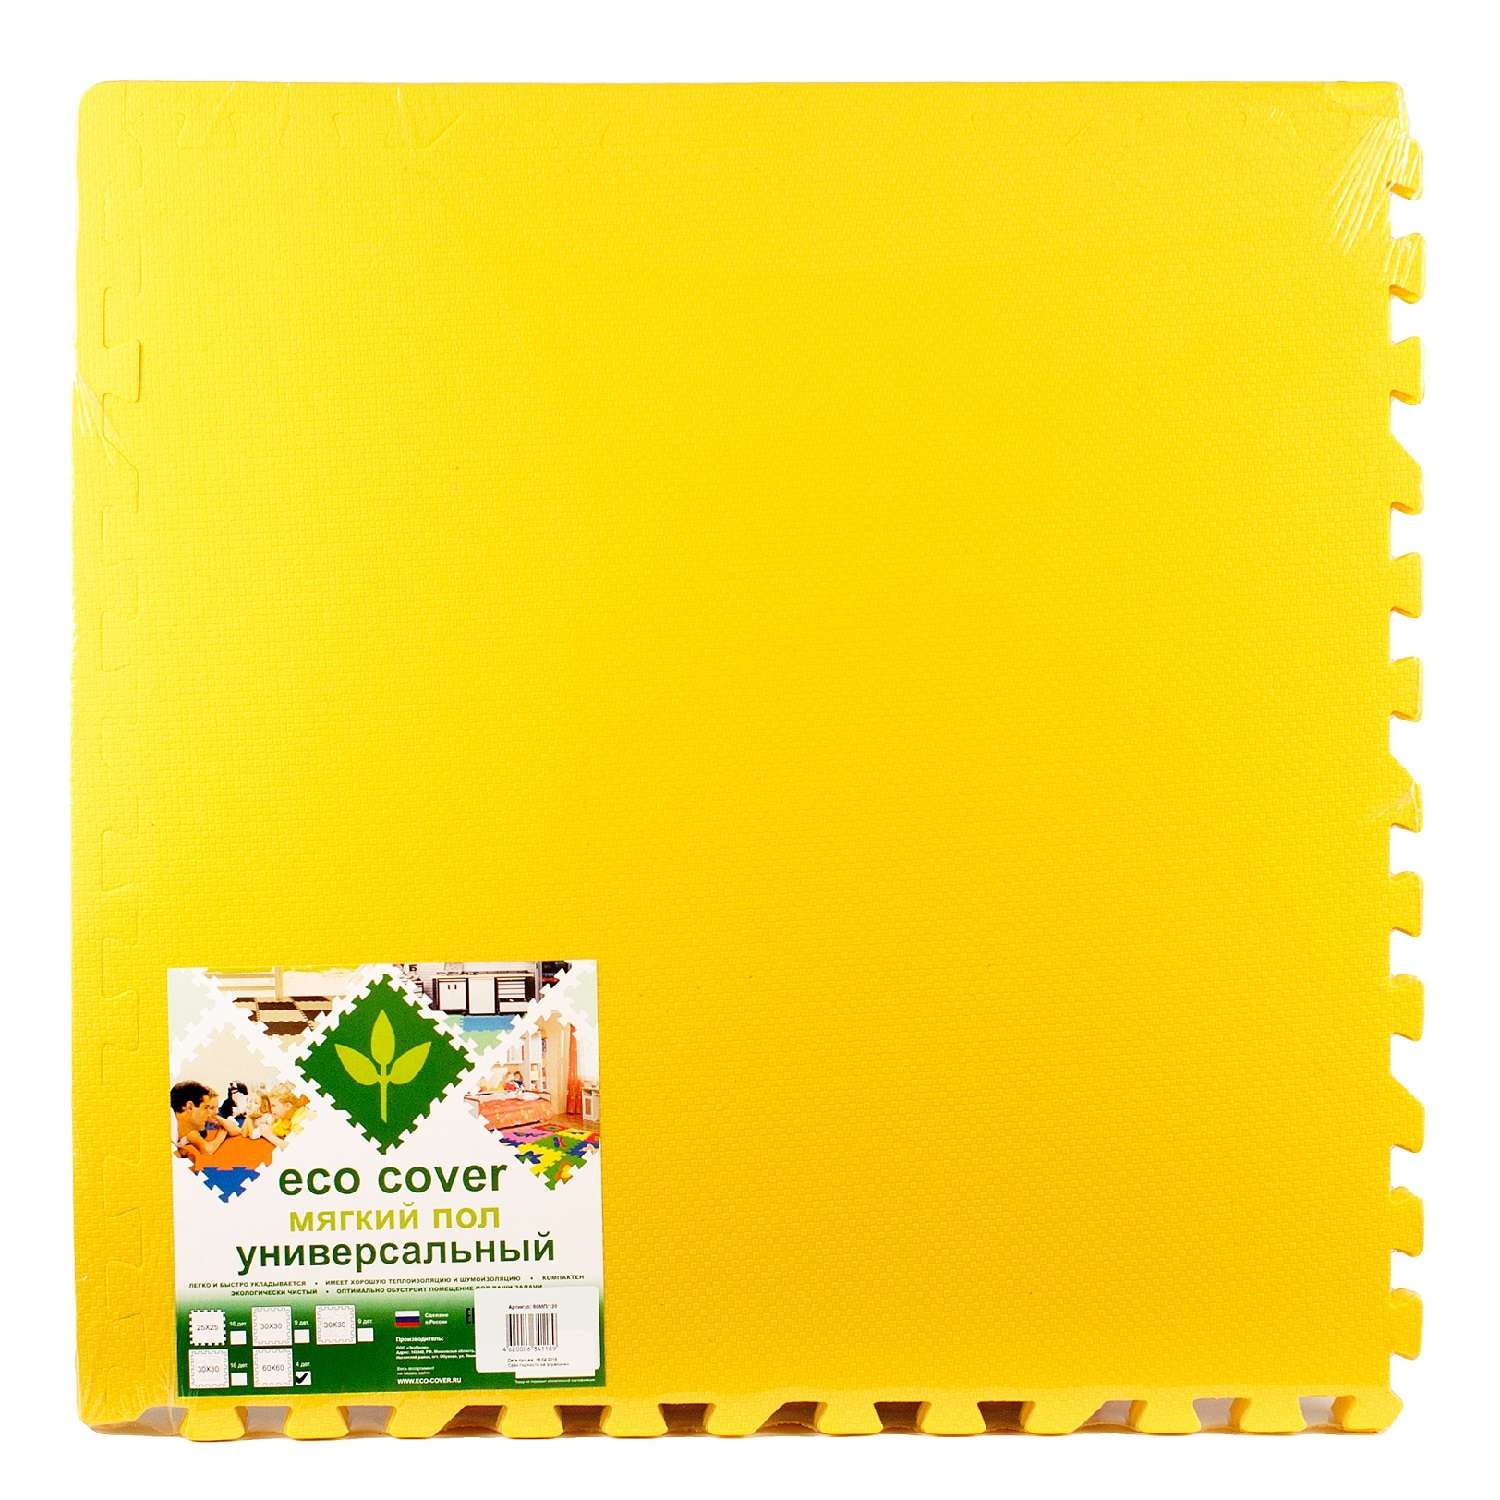 Развивающий детский коврик Eco cover игровой для ползания мягкий пол желтый 60х60 - фото 2